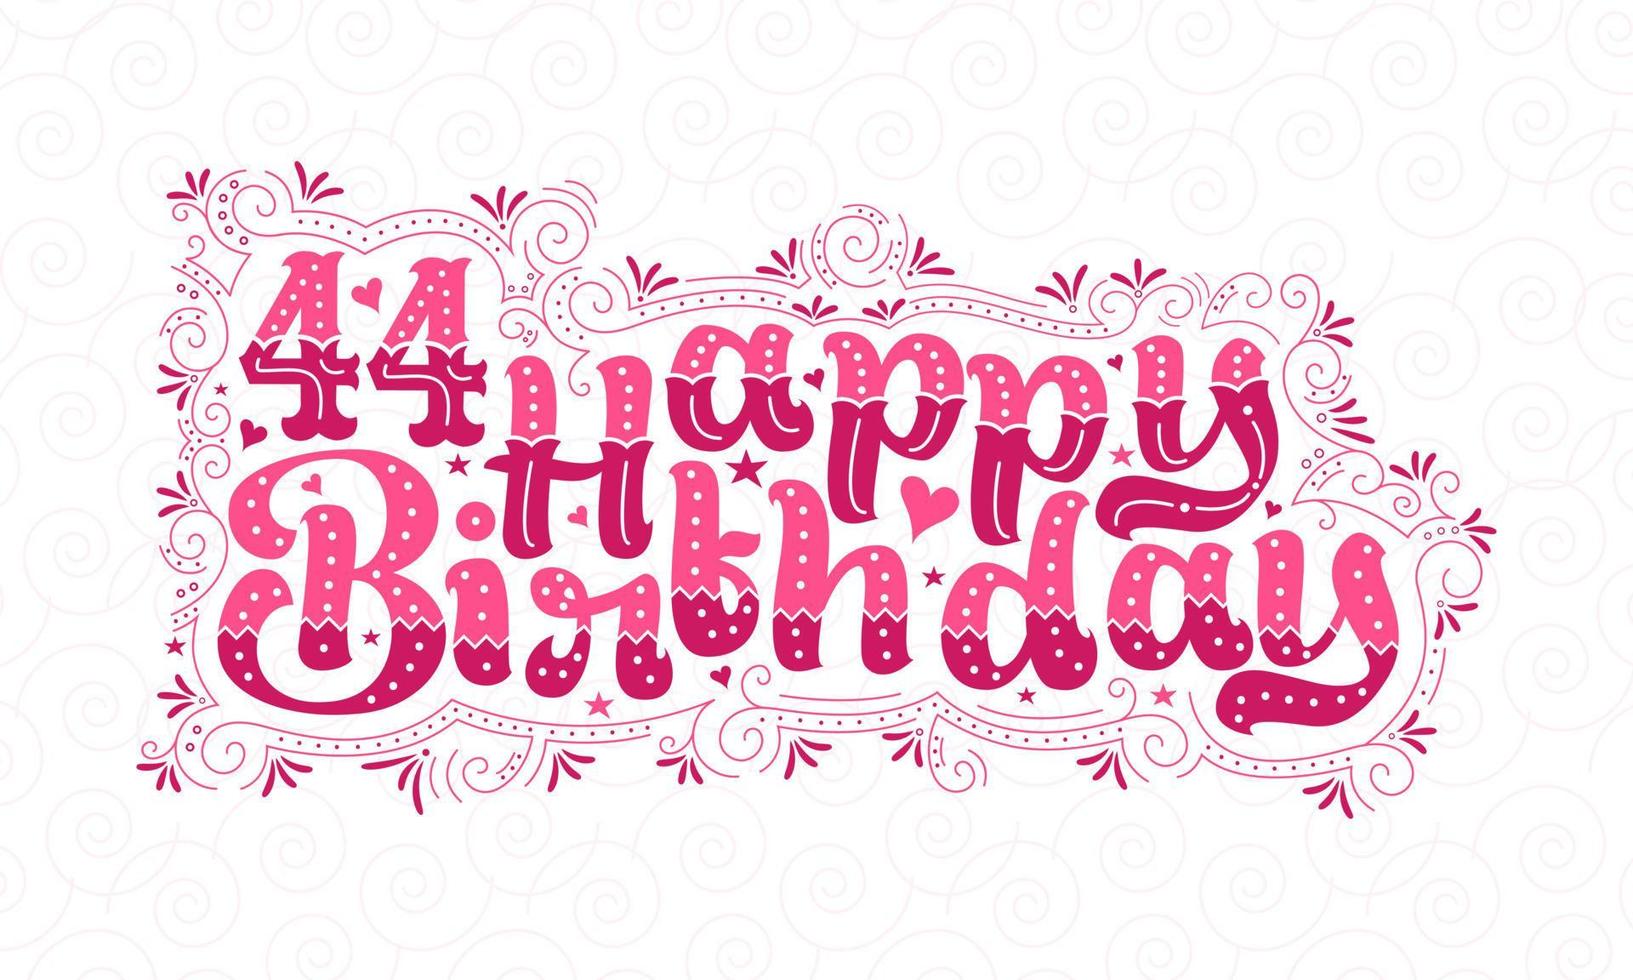 44e gelukkige verjaardag belettering, 44 jaar verjaardag mooi typografieontwerp met roze stippen, lijnen en bladeren. vector